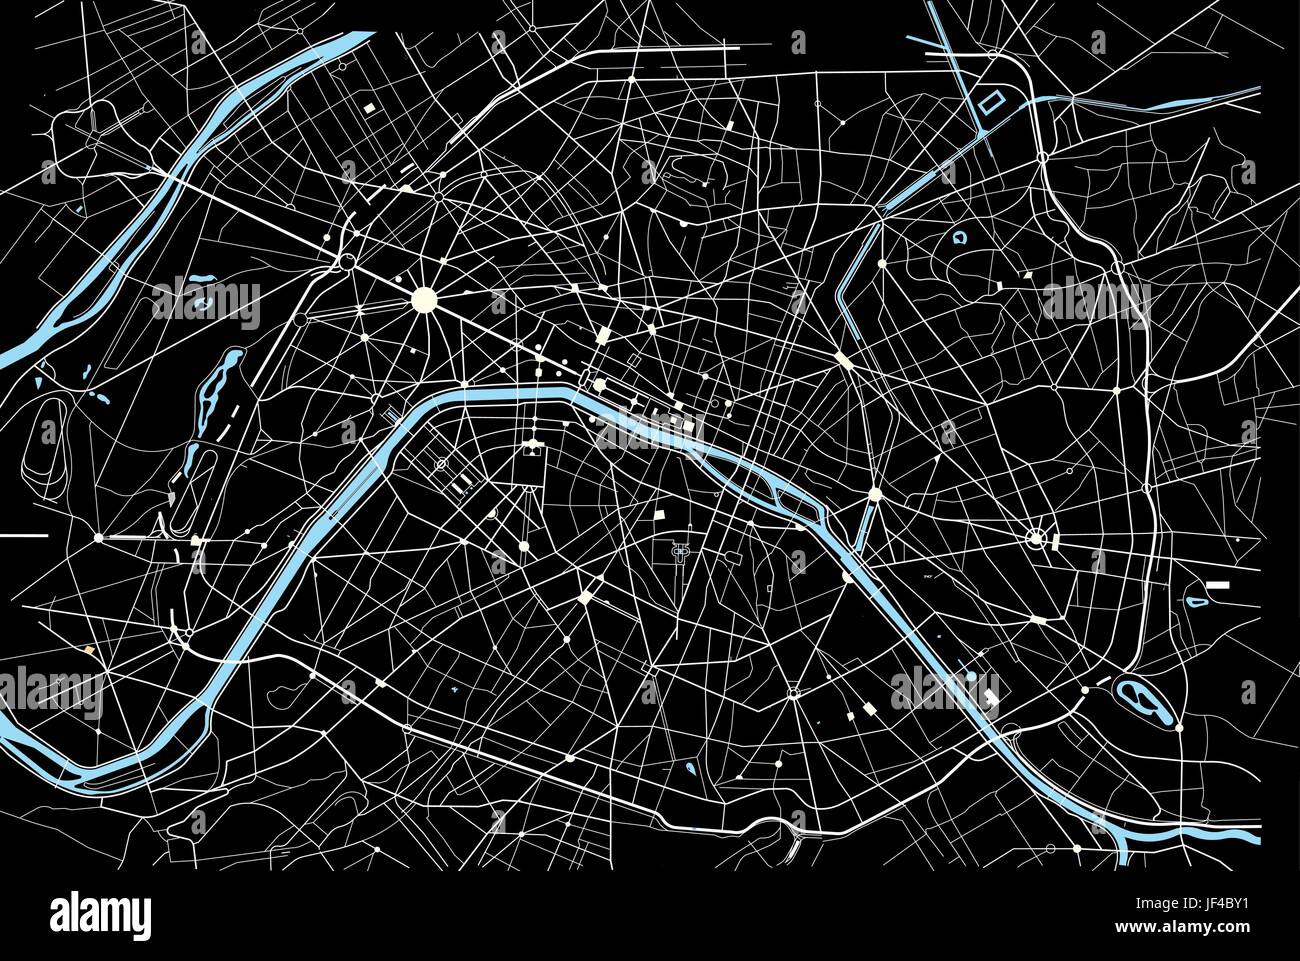 Ort, Stadt, Frankreich, Seine, Innenstadt, Straße, Karte, Atlas, Karte der Welt, Stock Vektor